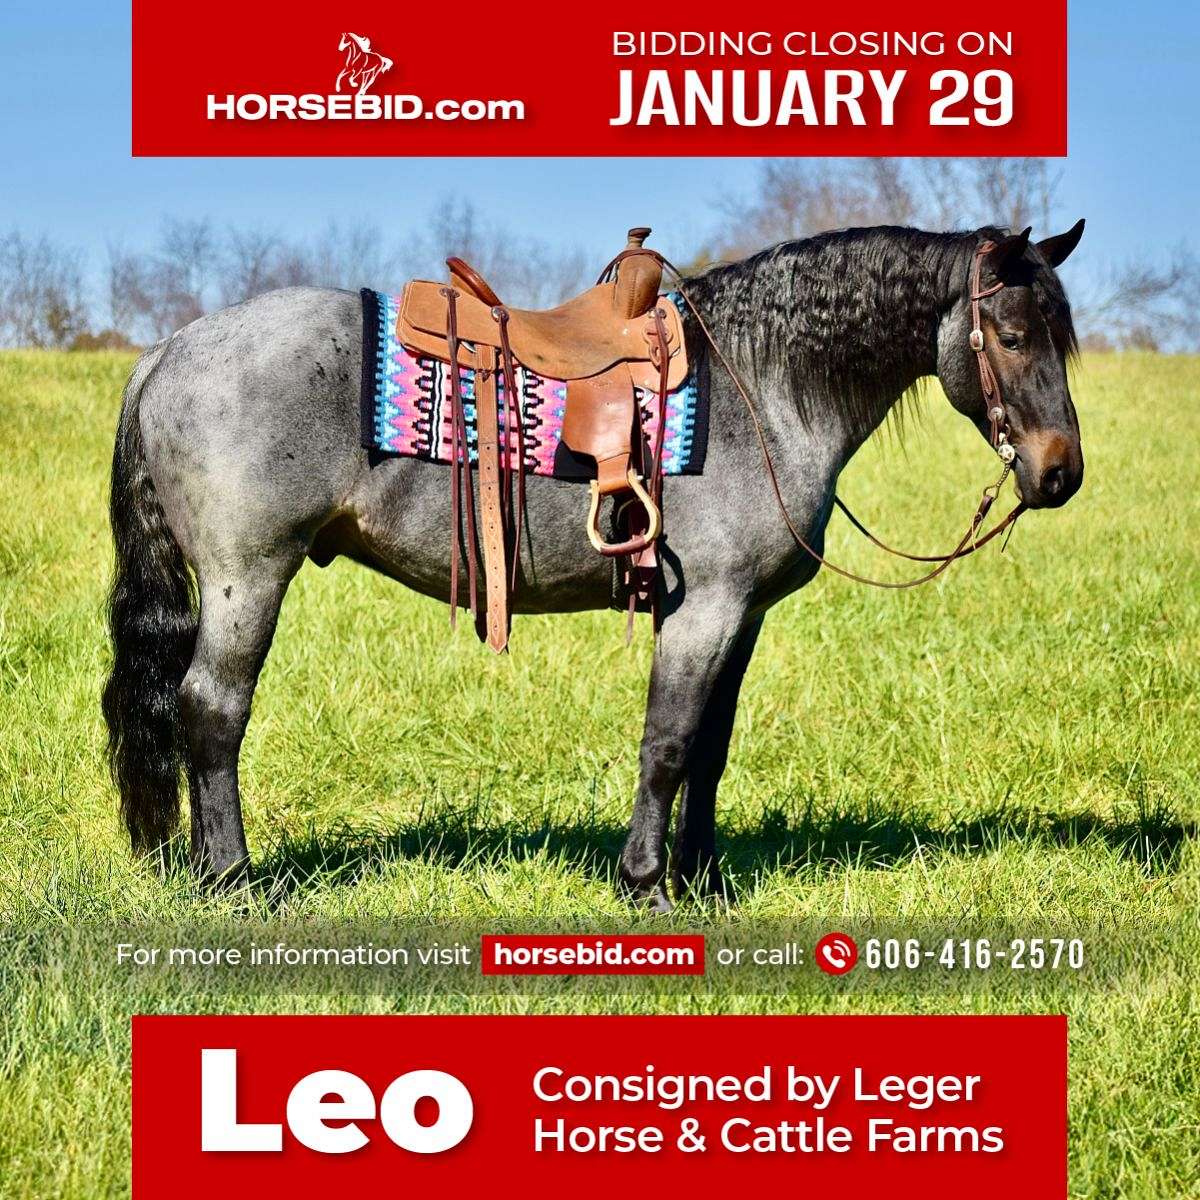 Leo - Ranch & Family Horse Deluxe 5 yo Blue Roan Percheron/Friesian Gelding